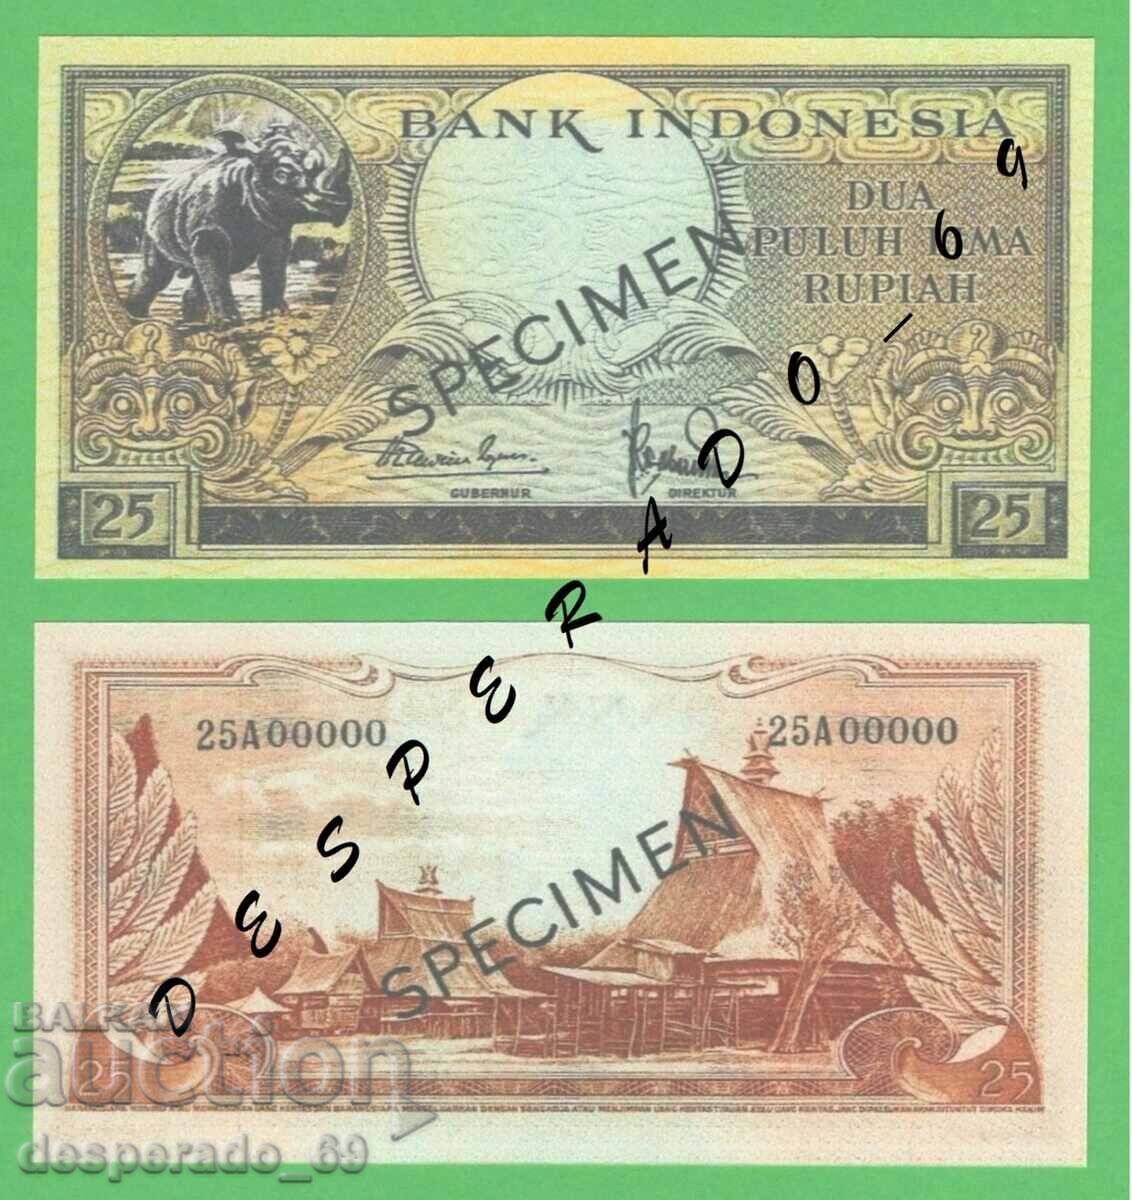 (¯`'•.¸(reproduction) INDONESIA 25 rupiah 1957 UNC¸.•'´¯)